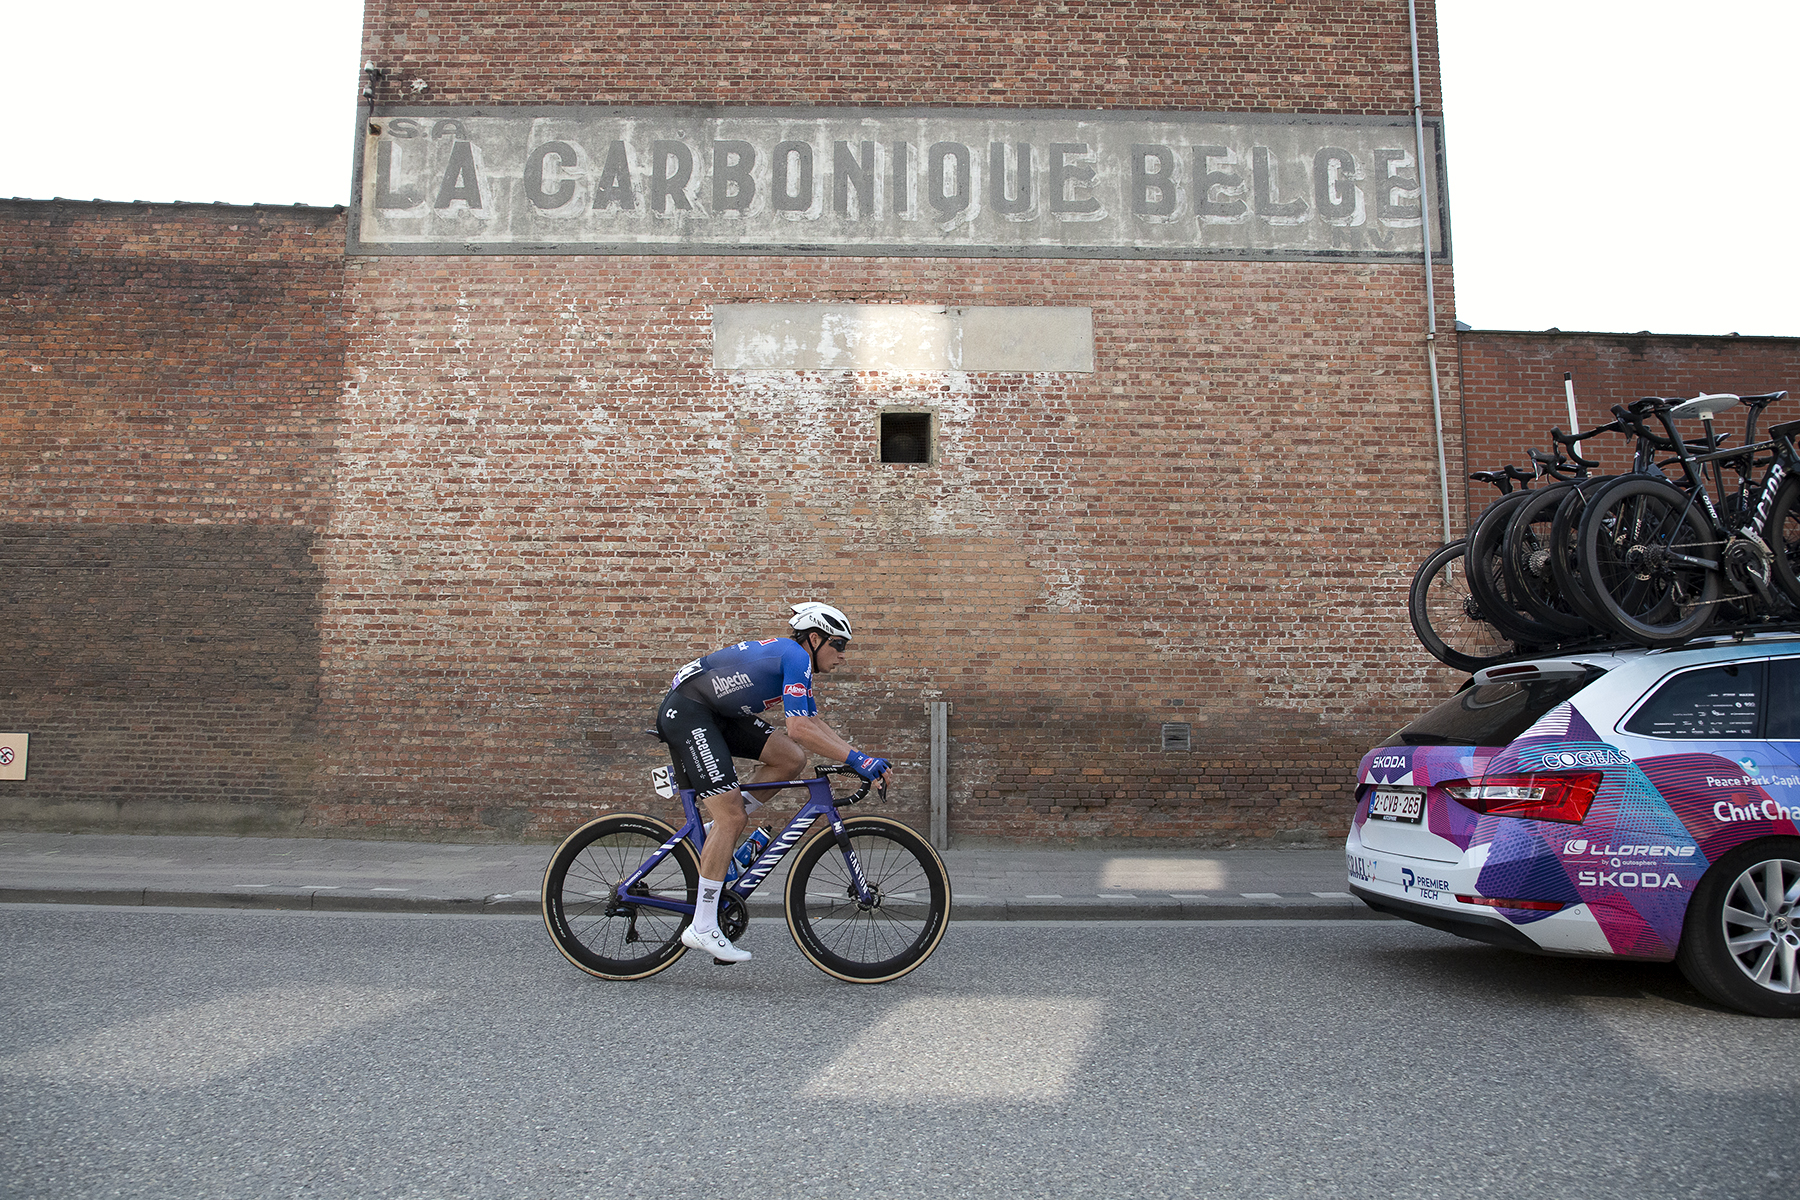 Scheldeprijs 2023 - Jasper Philipsen of Alpecin-Deceuninck passes a faded La Carbonique Belge sign on the side of a brick building